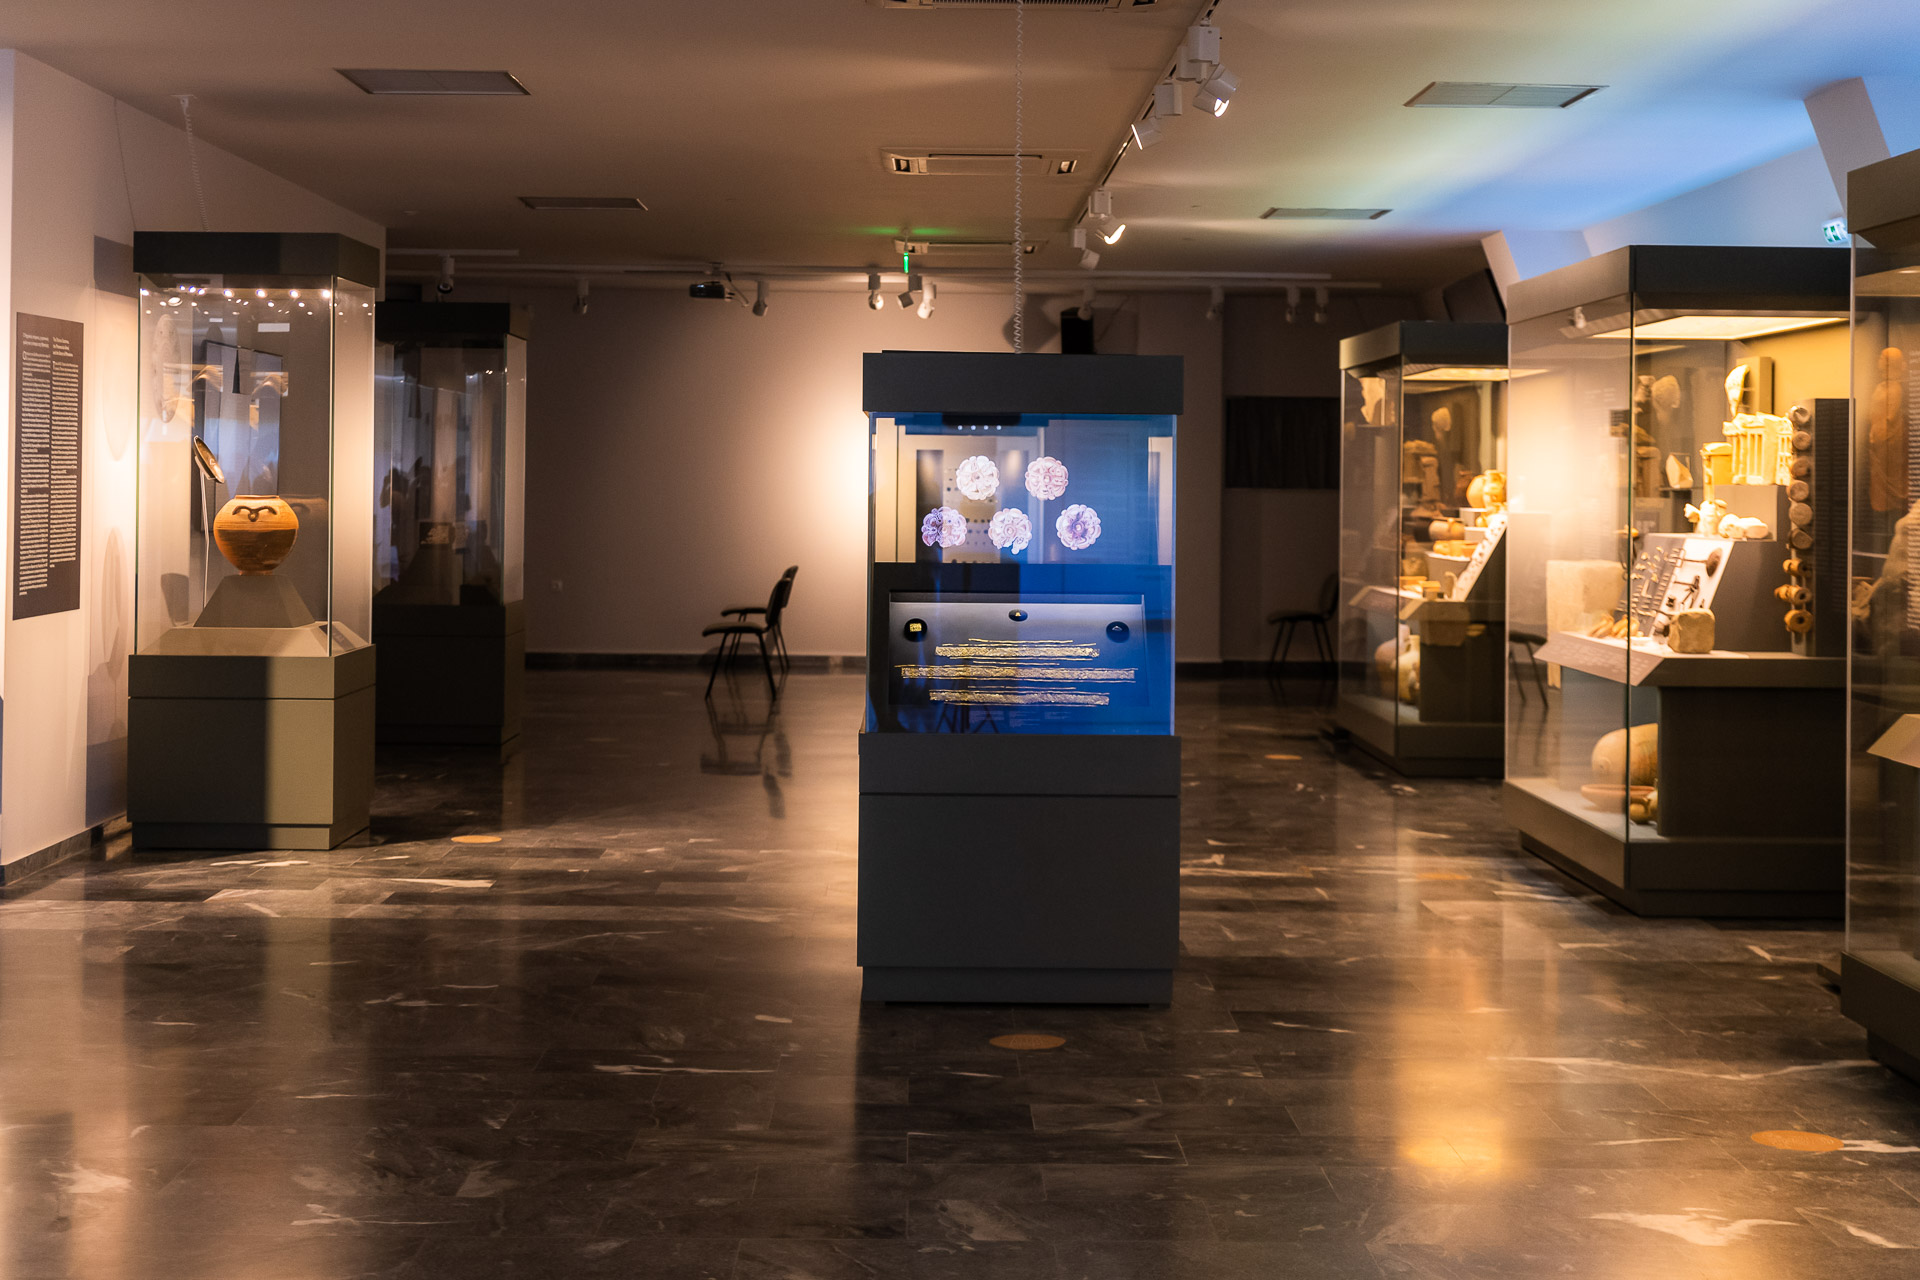 Μουσείο Αρχαίας Ελεύθερνας: Επέτειος μετά… μουσικής